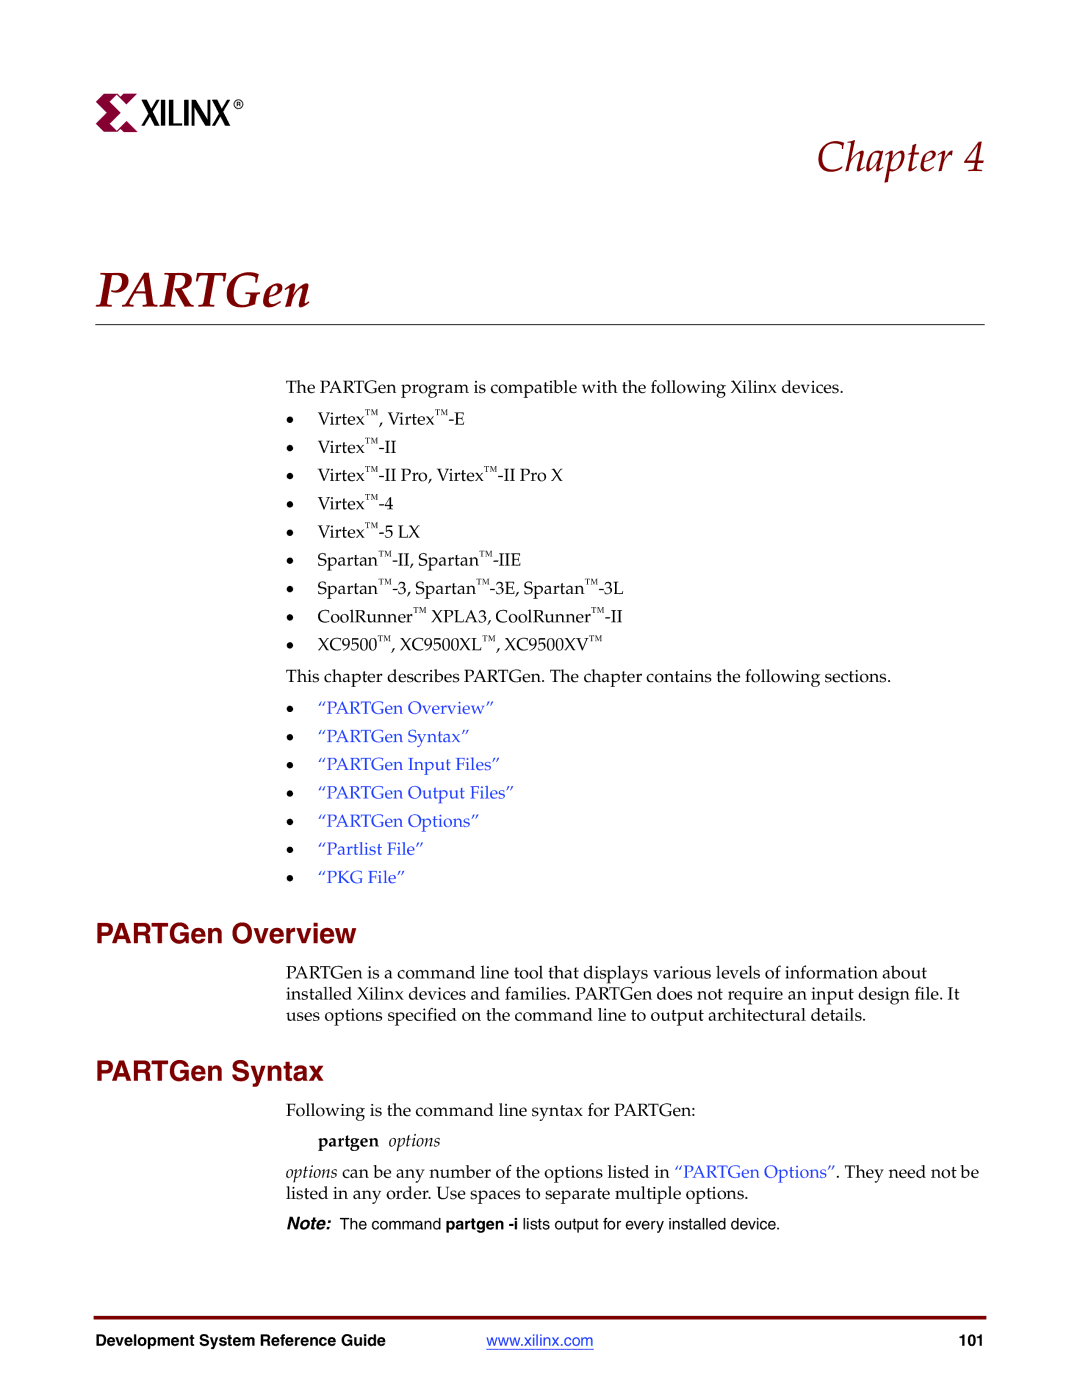 Xilinx 8.2i manual PARTGen Overview, PARTGen Syntax, Partgen options 